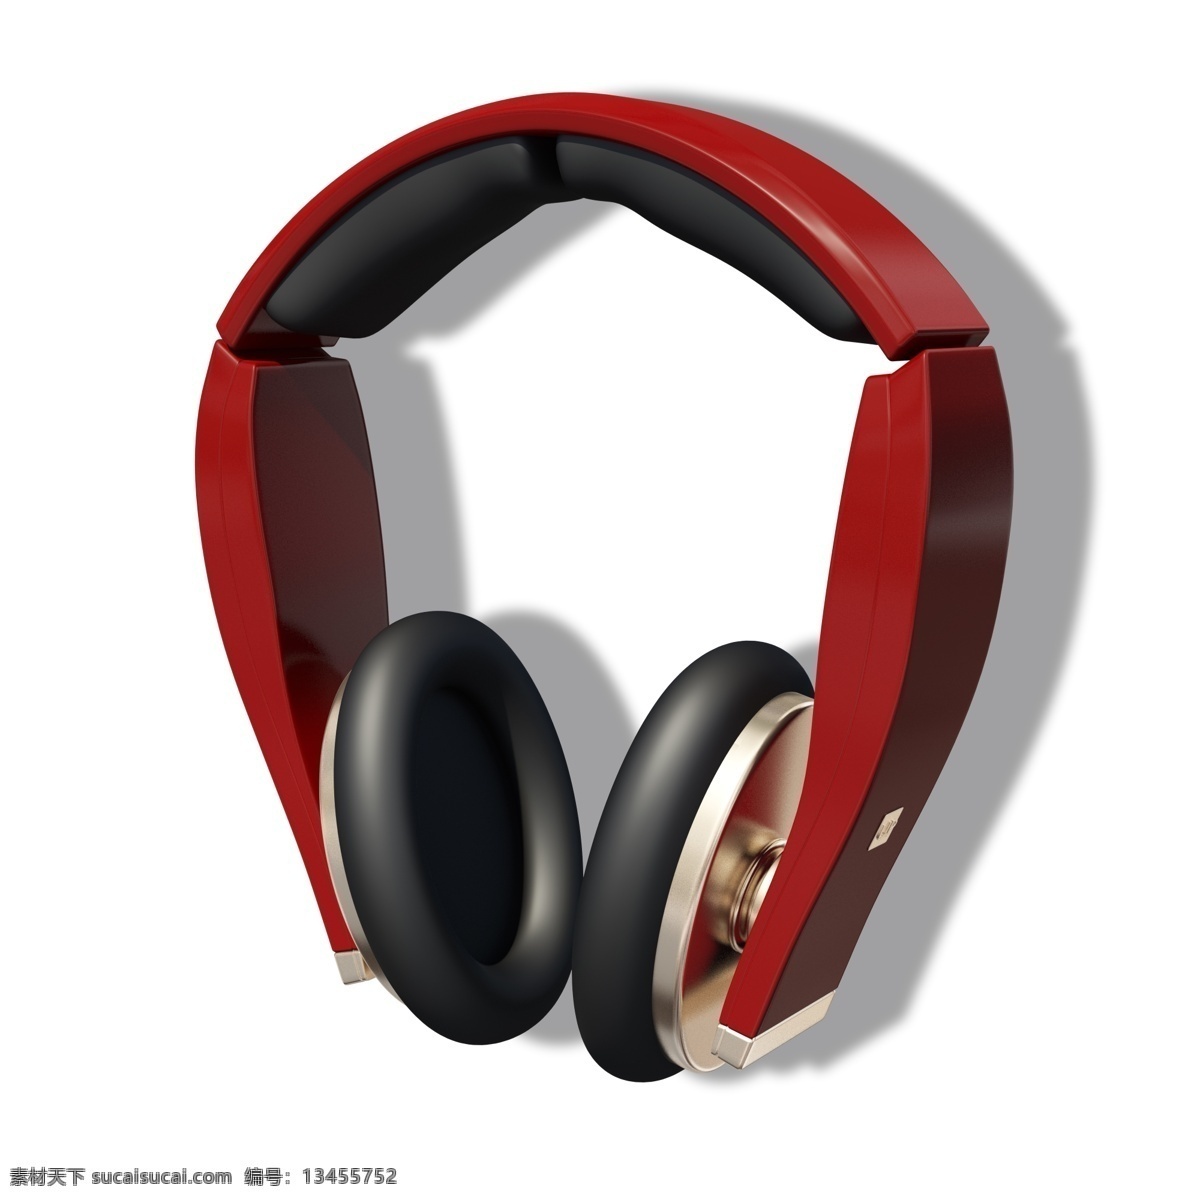 电脑配件 立体声 红色 耳机 红色耳机 耳麦 高档耳机 音乐 听音乐 酒红色的耳机 时尚耳机